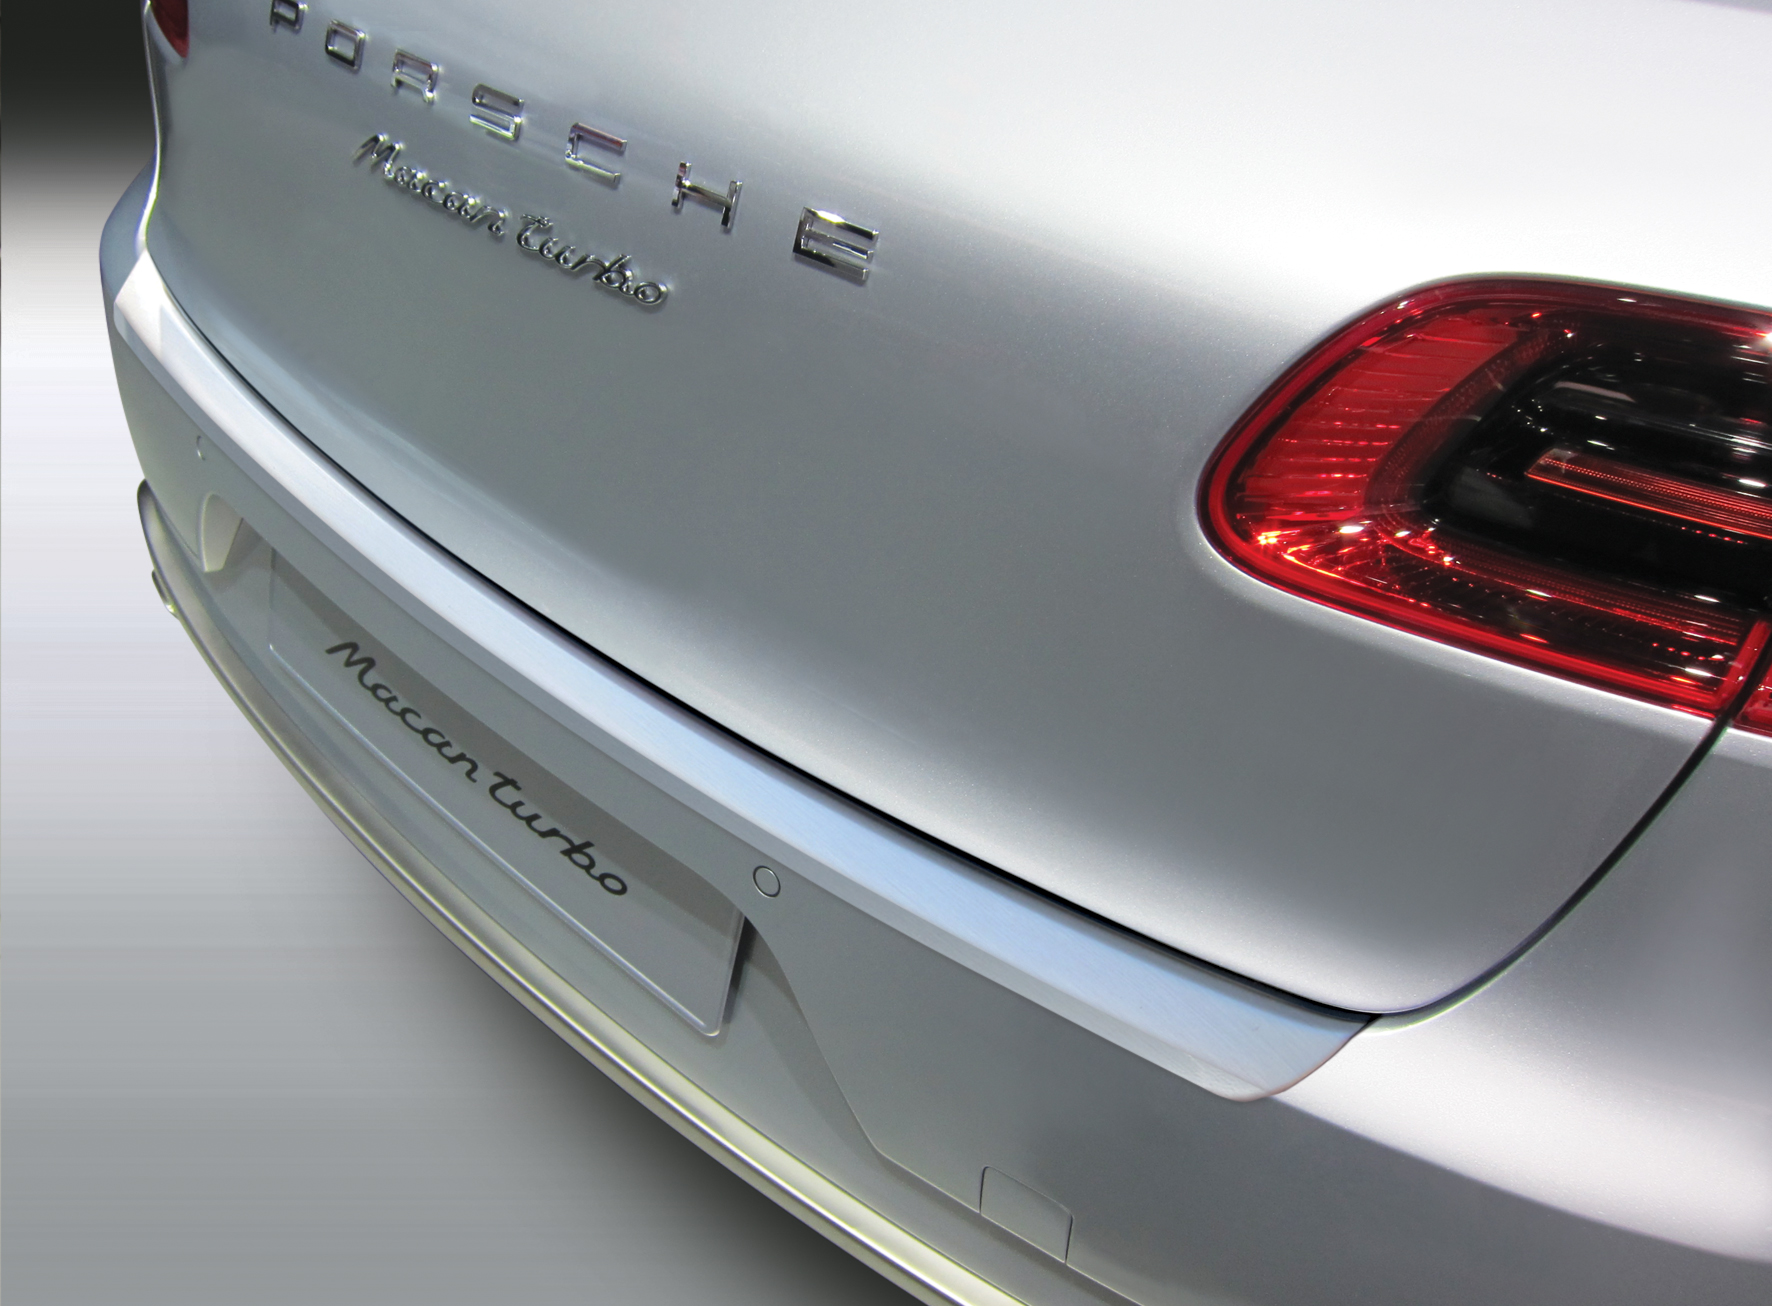 Ladekantenschutz mit Abkantung passend für Aroba Sonderfarbe | BJ. ABS 04.2014 ab Optik Gebürstet bis Porsche Aluminium Macan 08.2018